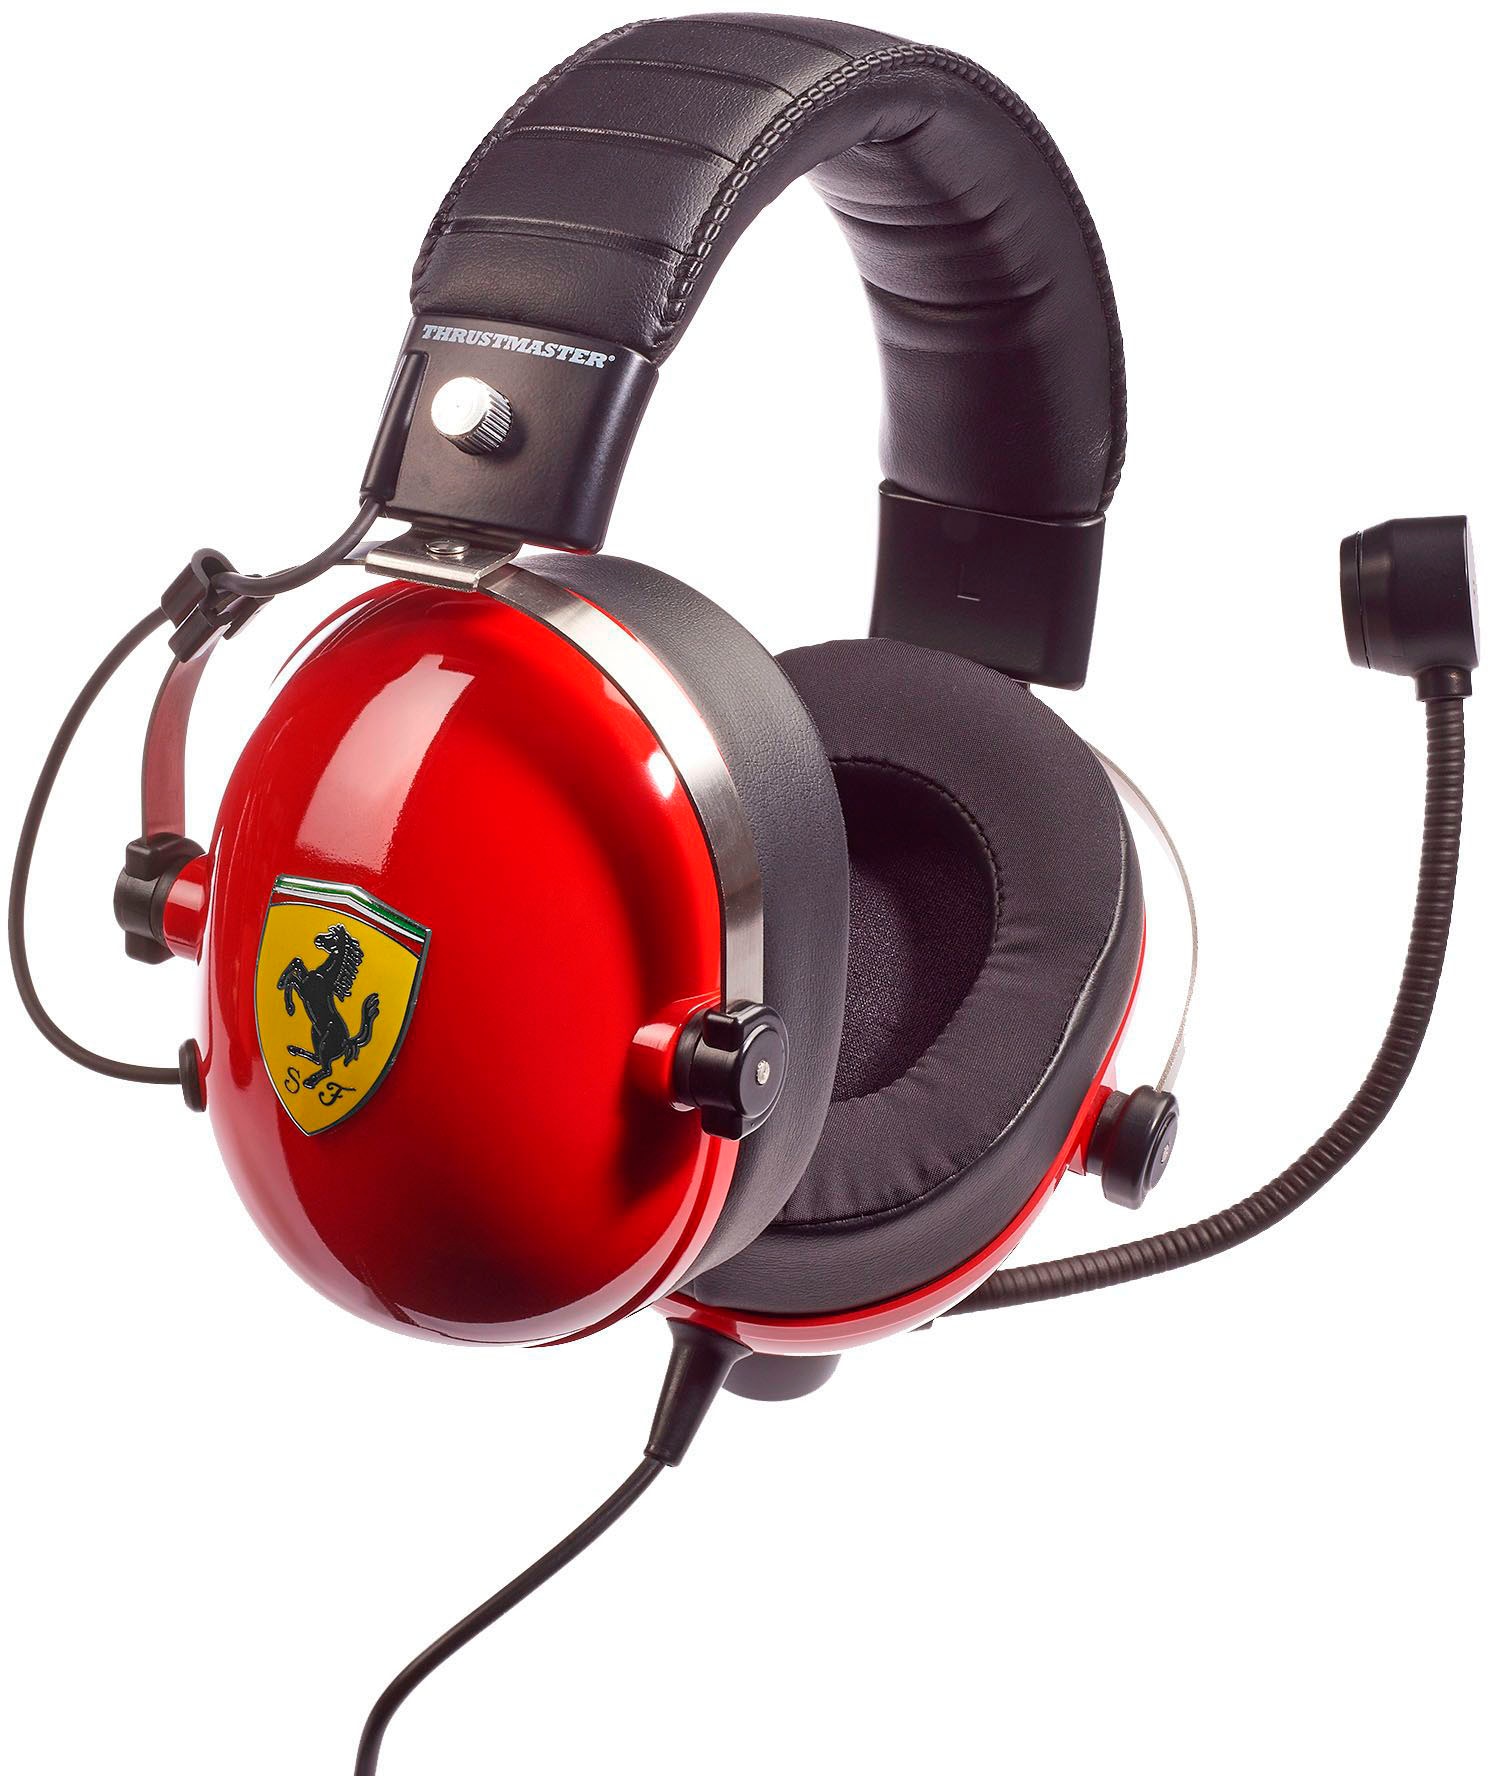 Thrustmaster Kopfhörer »T.Racing Scuderia Ferrari Edition DTS«